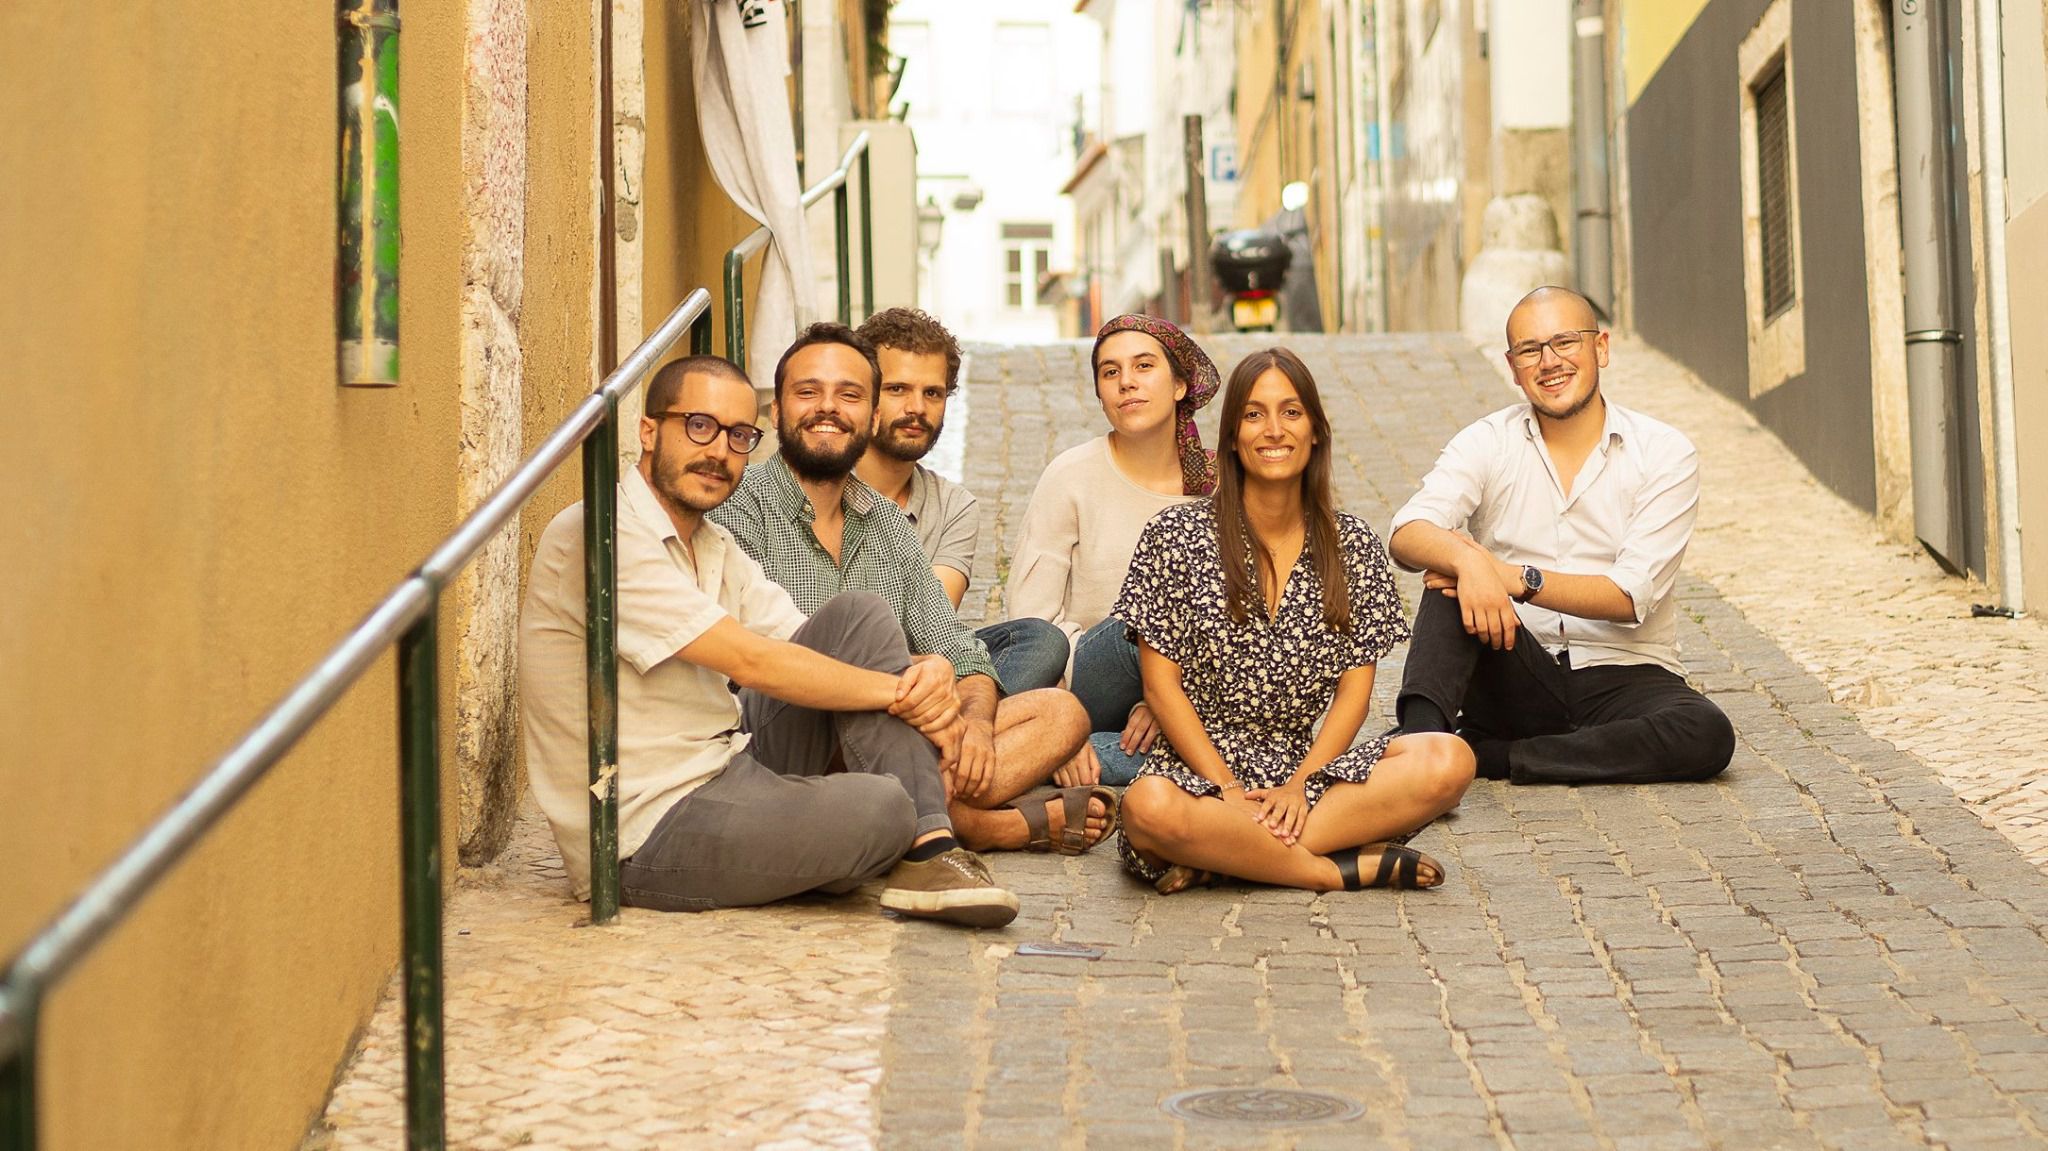 Fumaça. Quase 1000 pessoas doam 21 mil euros para financiar jornalismo de investigação em Portugal